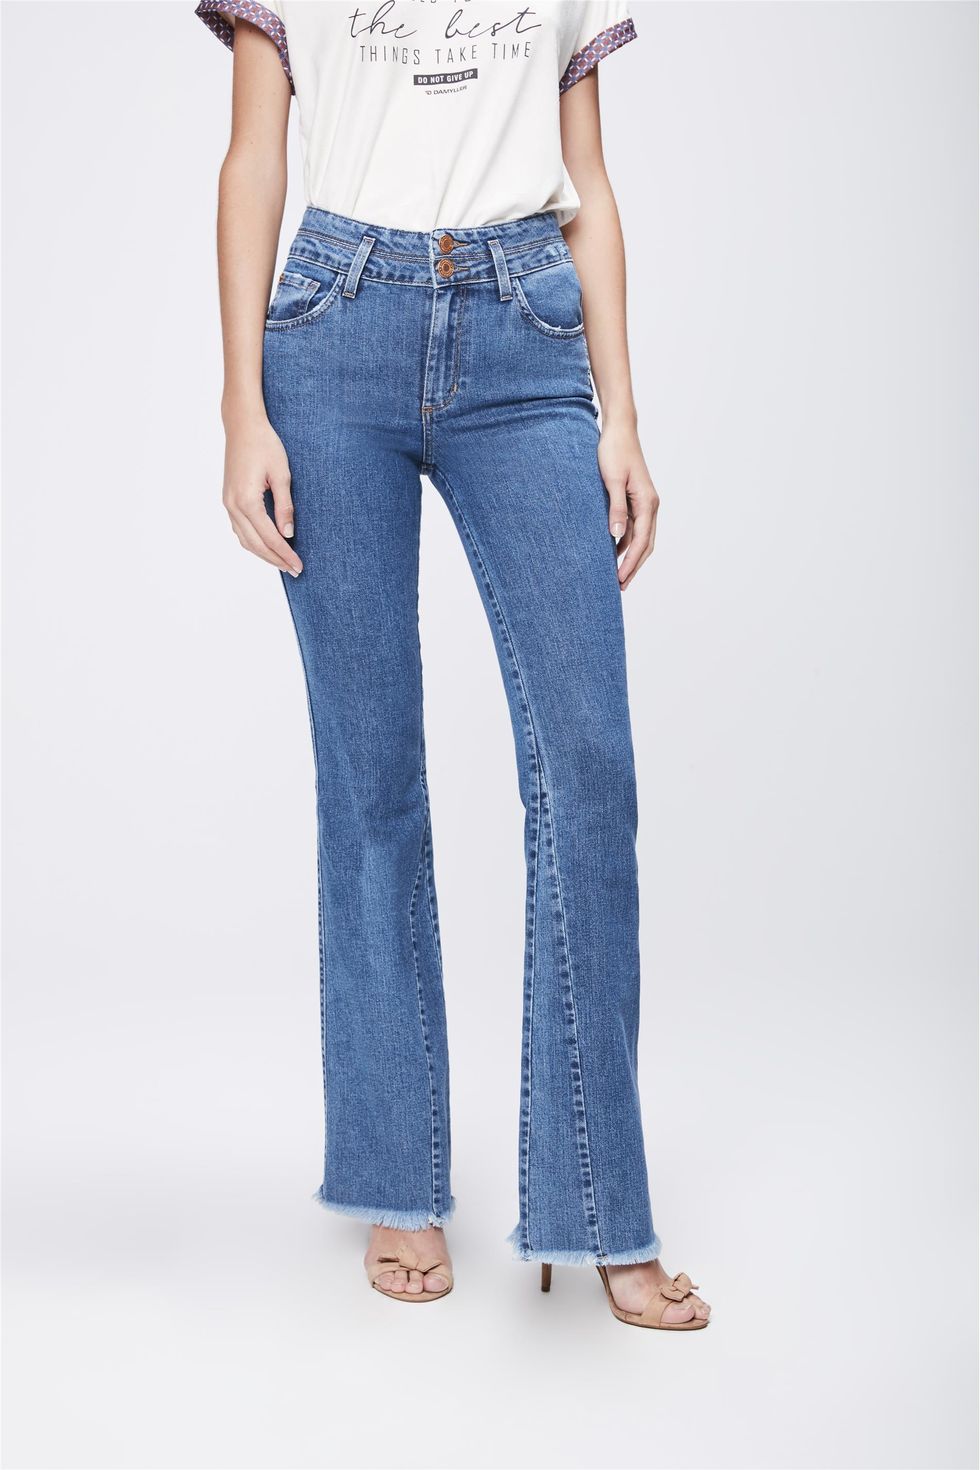 calça jeans damyller feminina